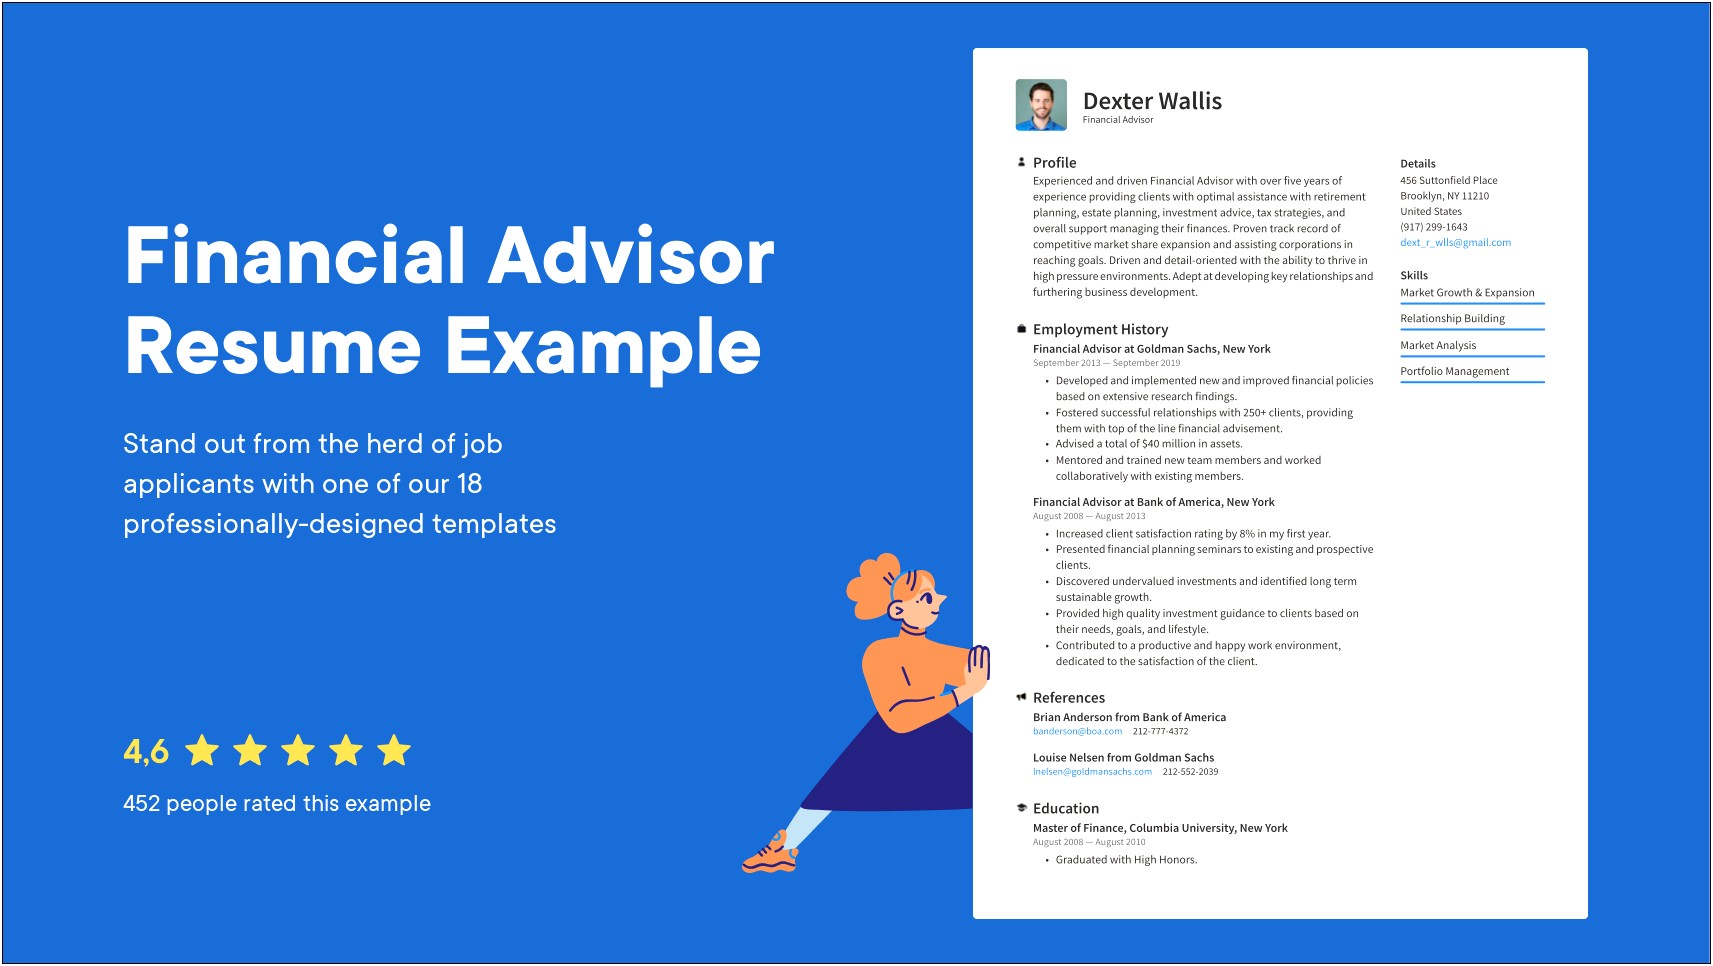 Resume Description For A Financial Advisor